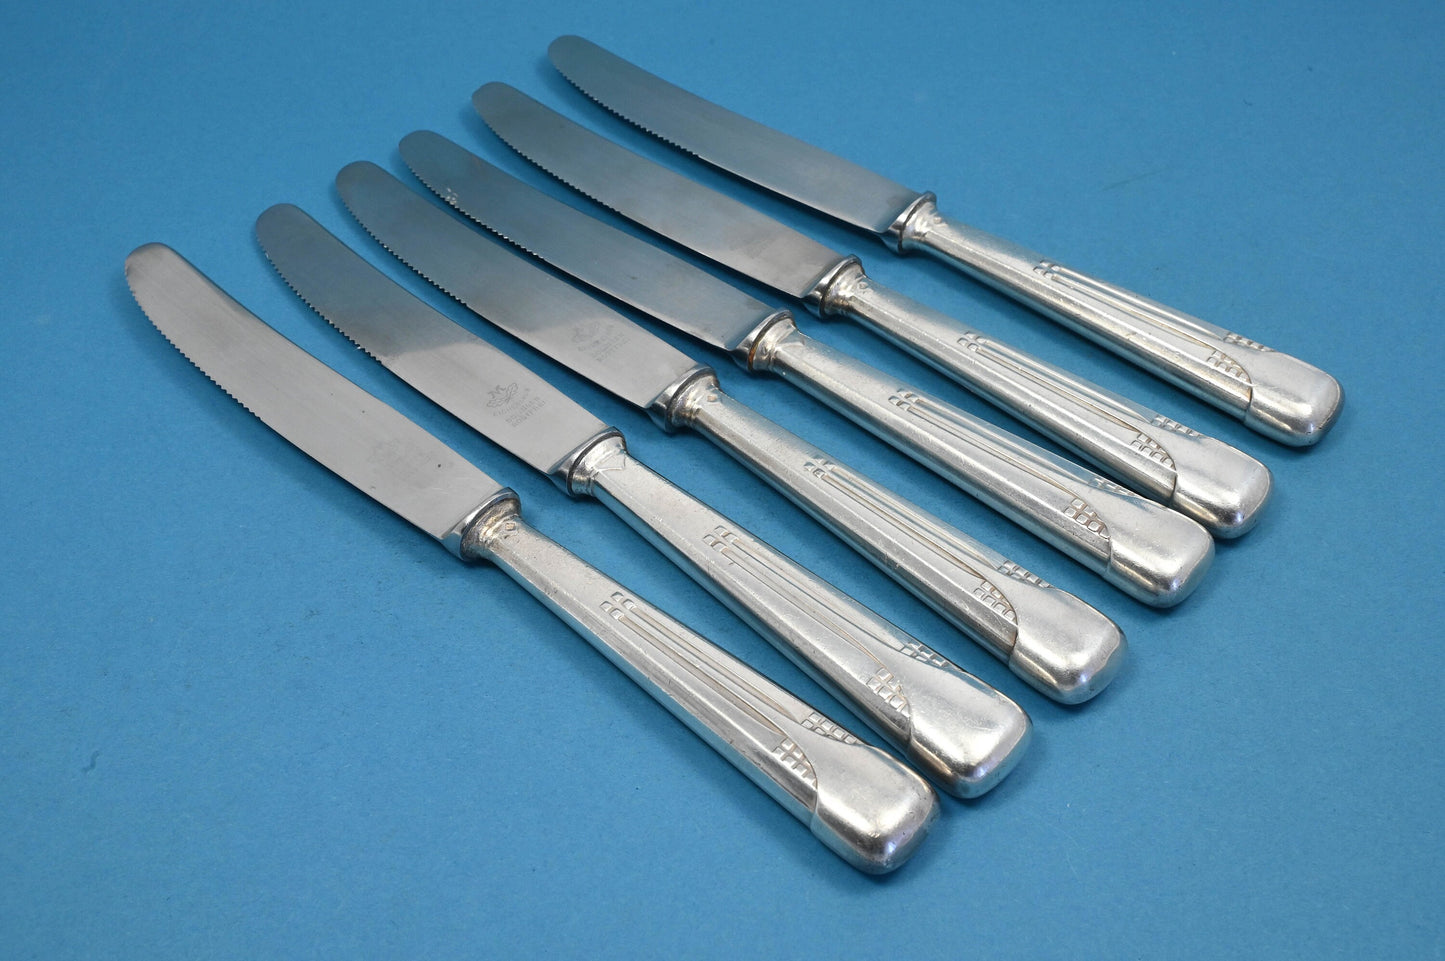 Sechs Messer von WMF, Würfelmuster WMF 34